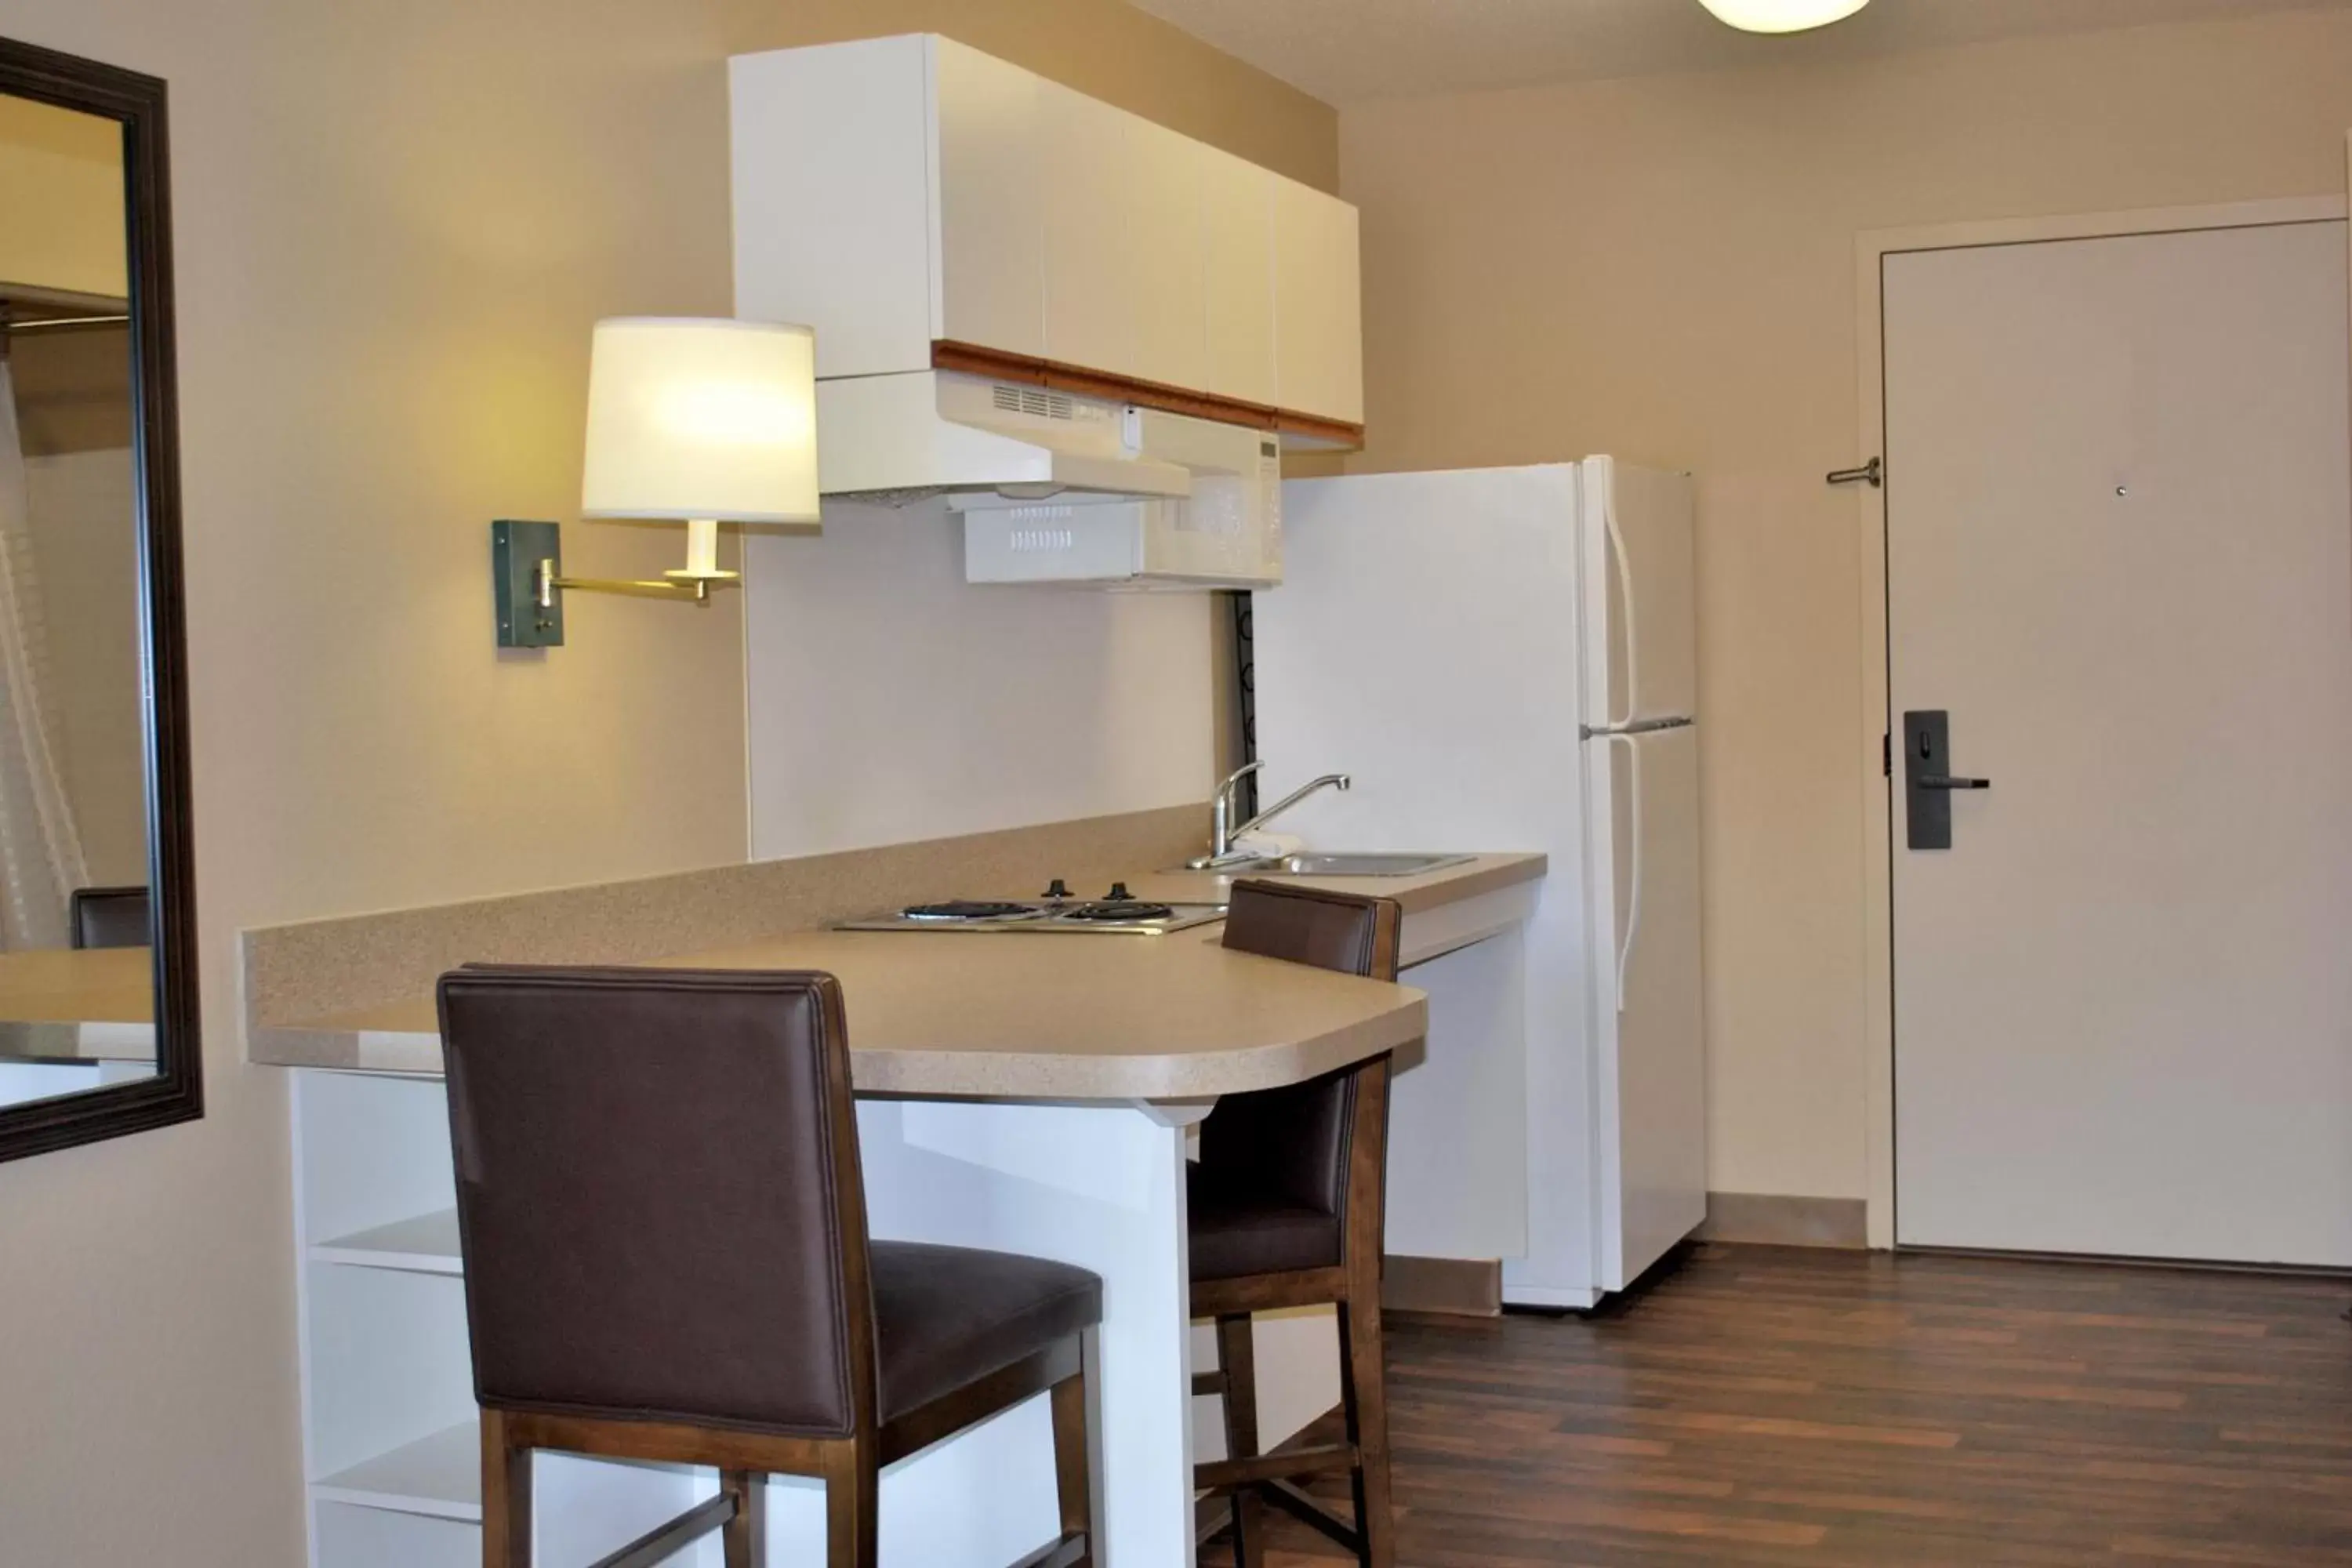 Kitchen or kitchenette, Kitchen/Kitchenette in Extended Stay America Suites - Philadelphia - Horsham - Dresher Rd